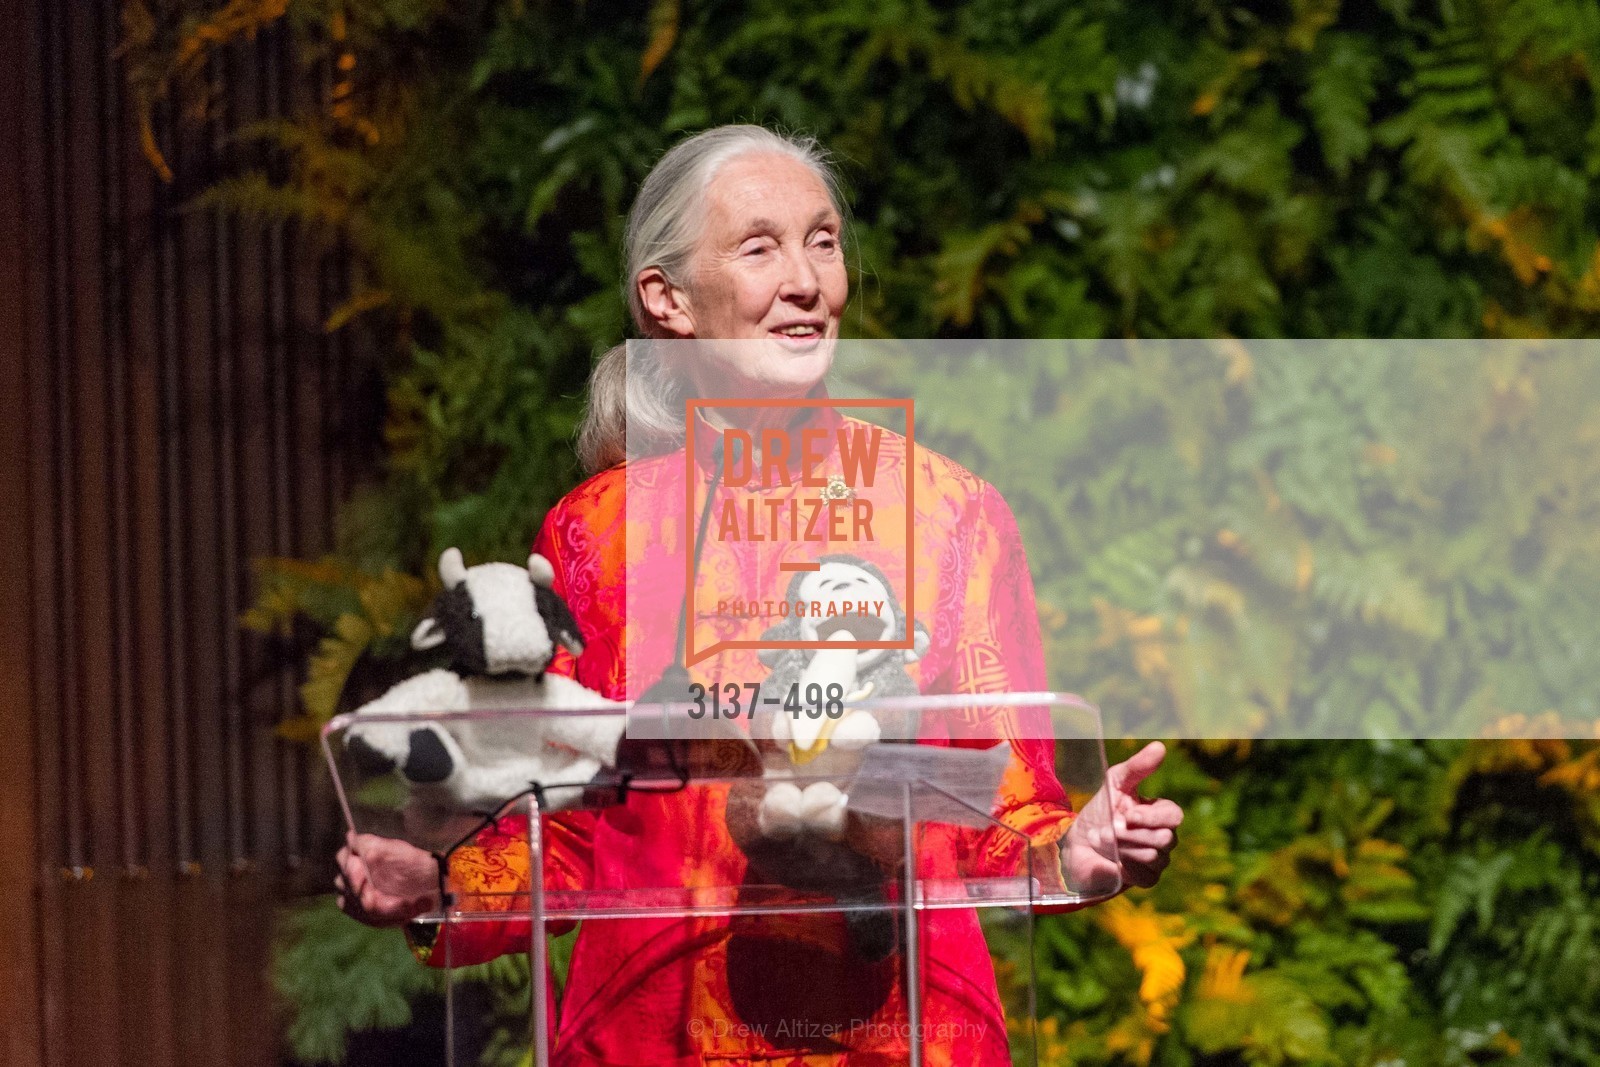 Jane Goodall, Photo #3137-498